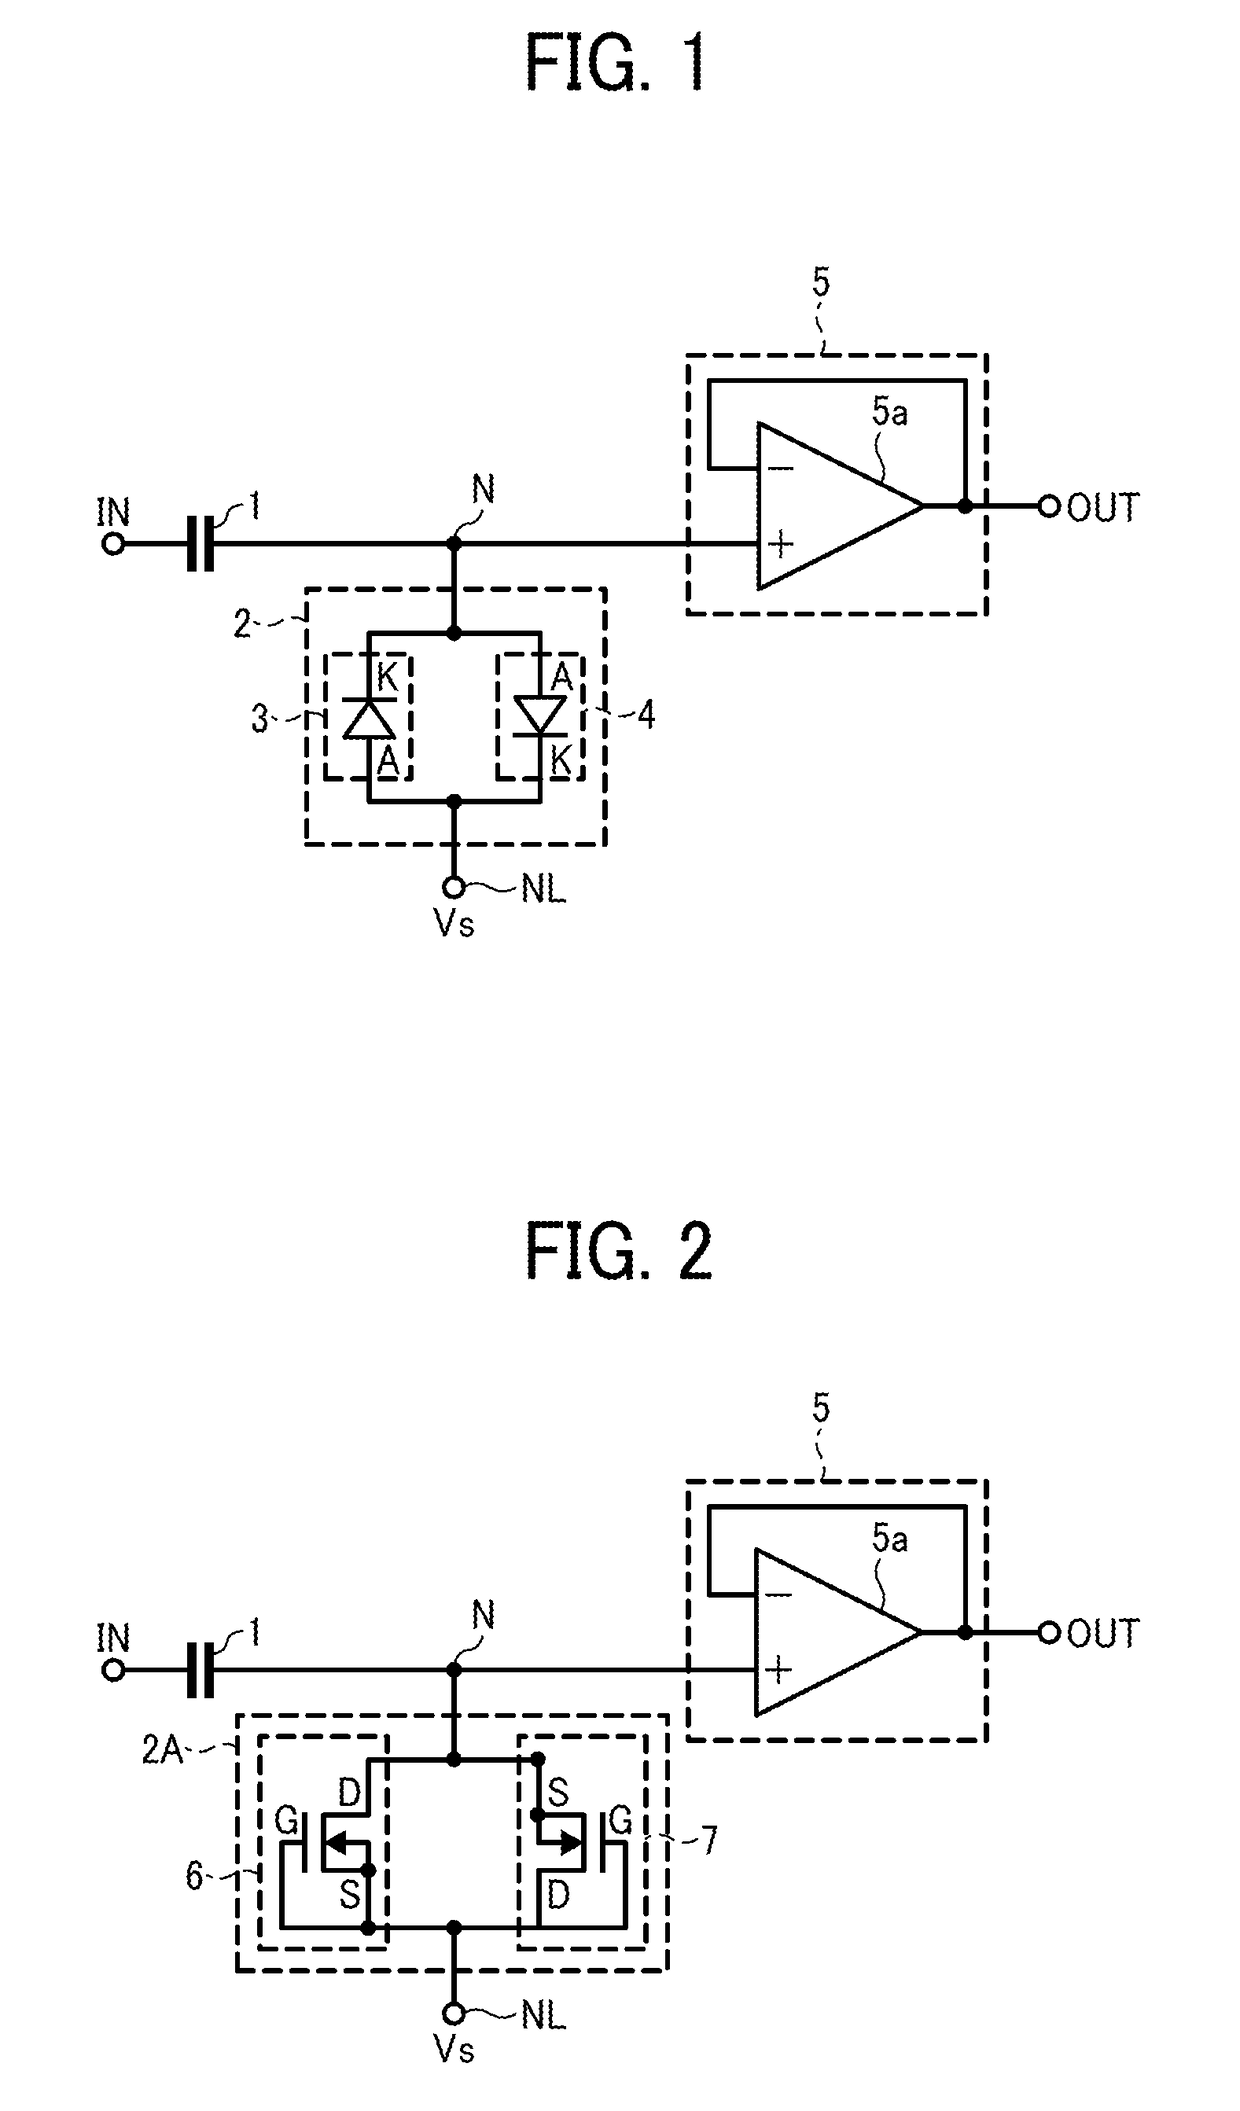 High-pass filter circuit and band-pass filter circuit